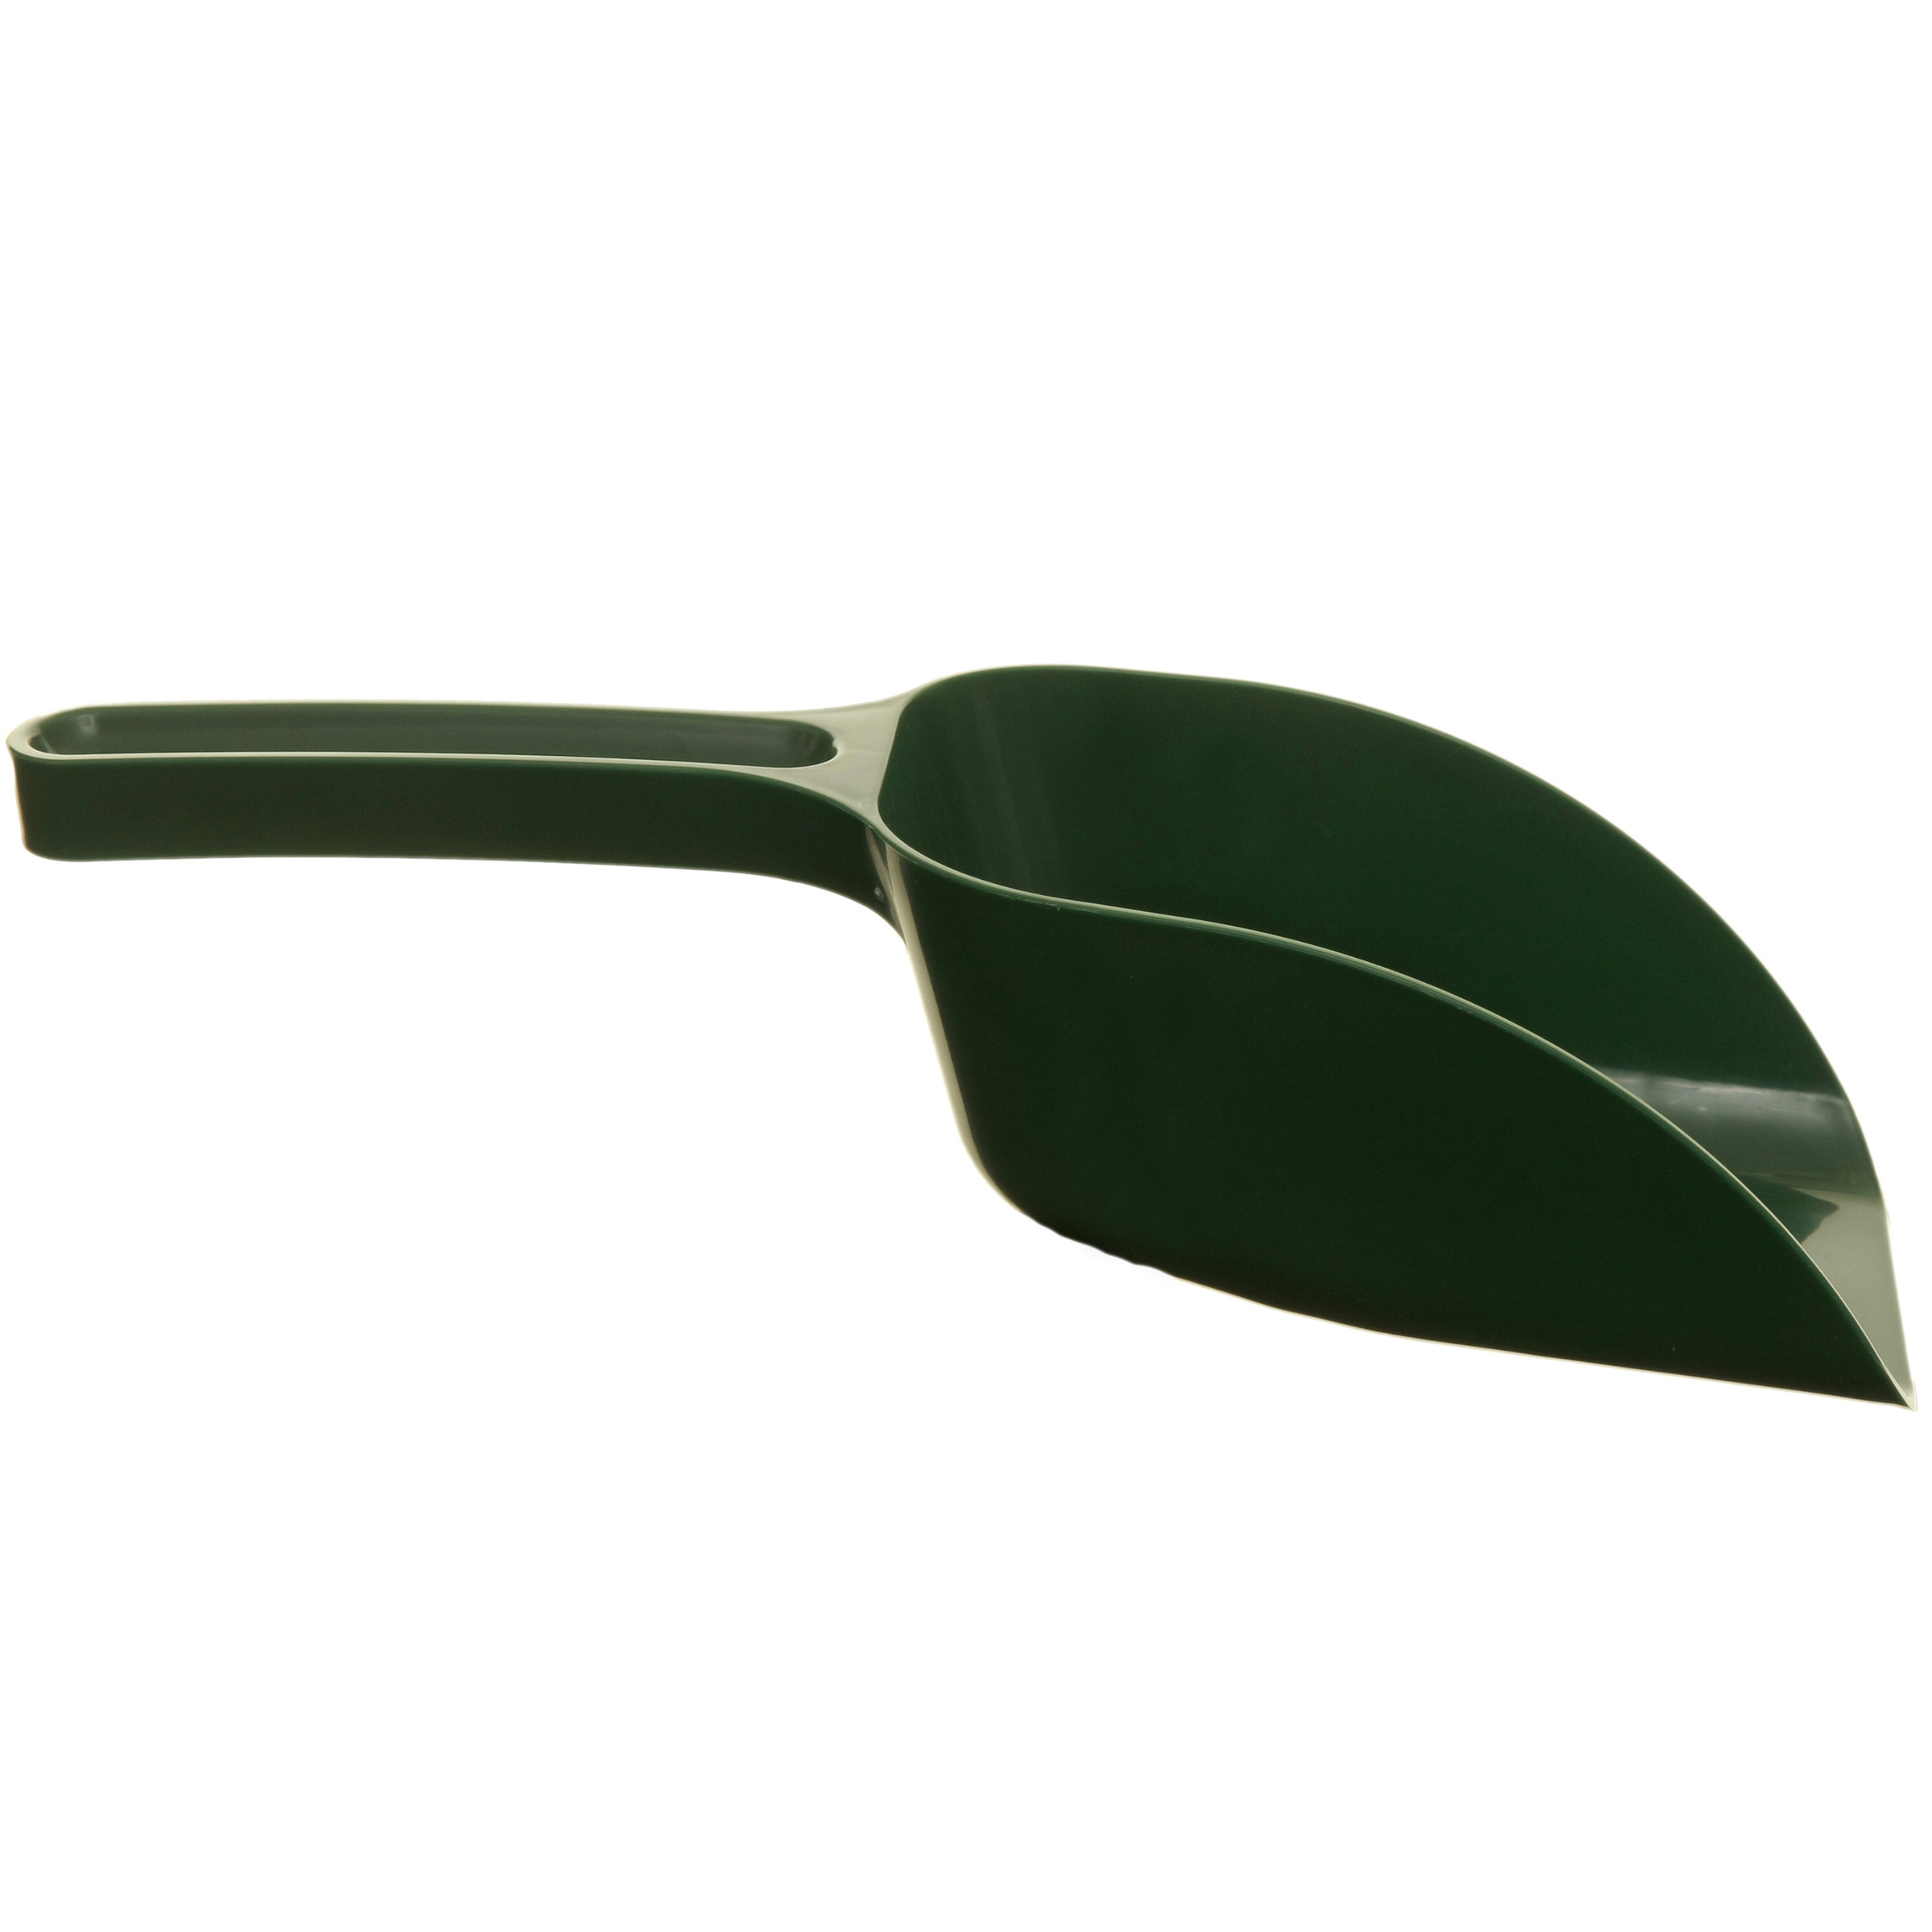 Tuinschep-Plantenschep groen kunststof 30 x 10 x 7 cm